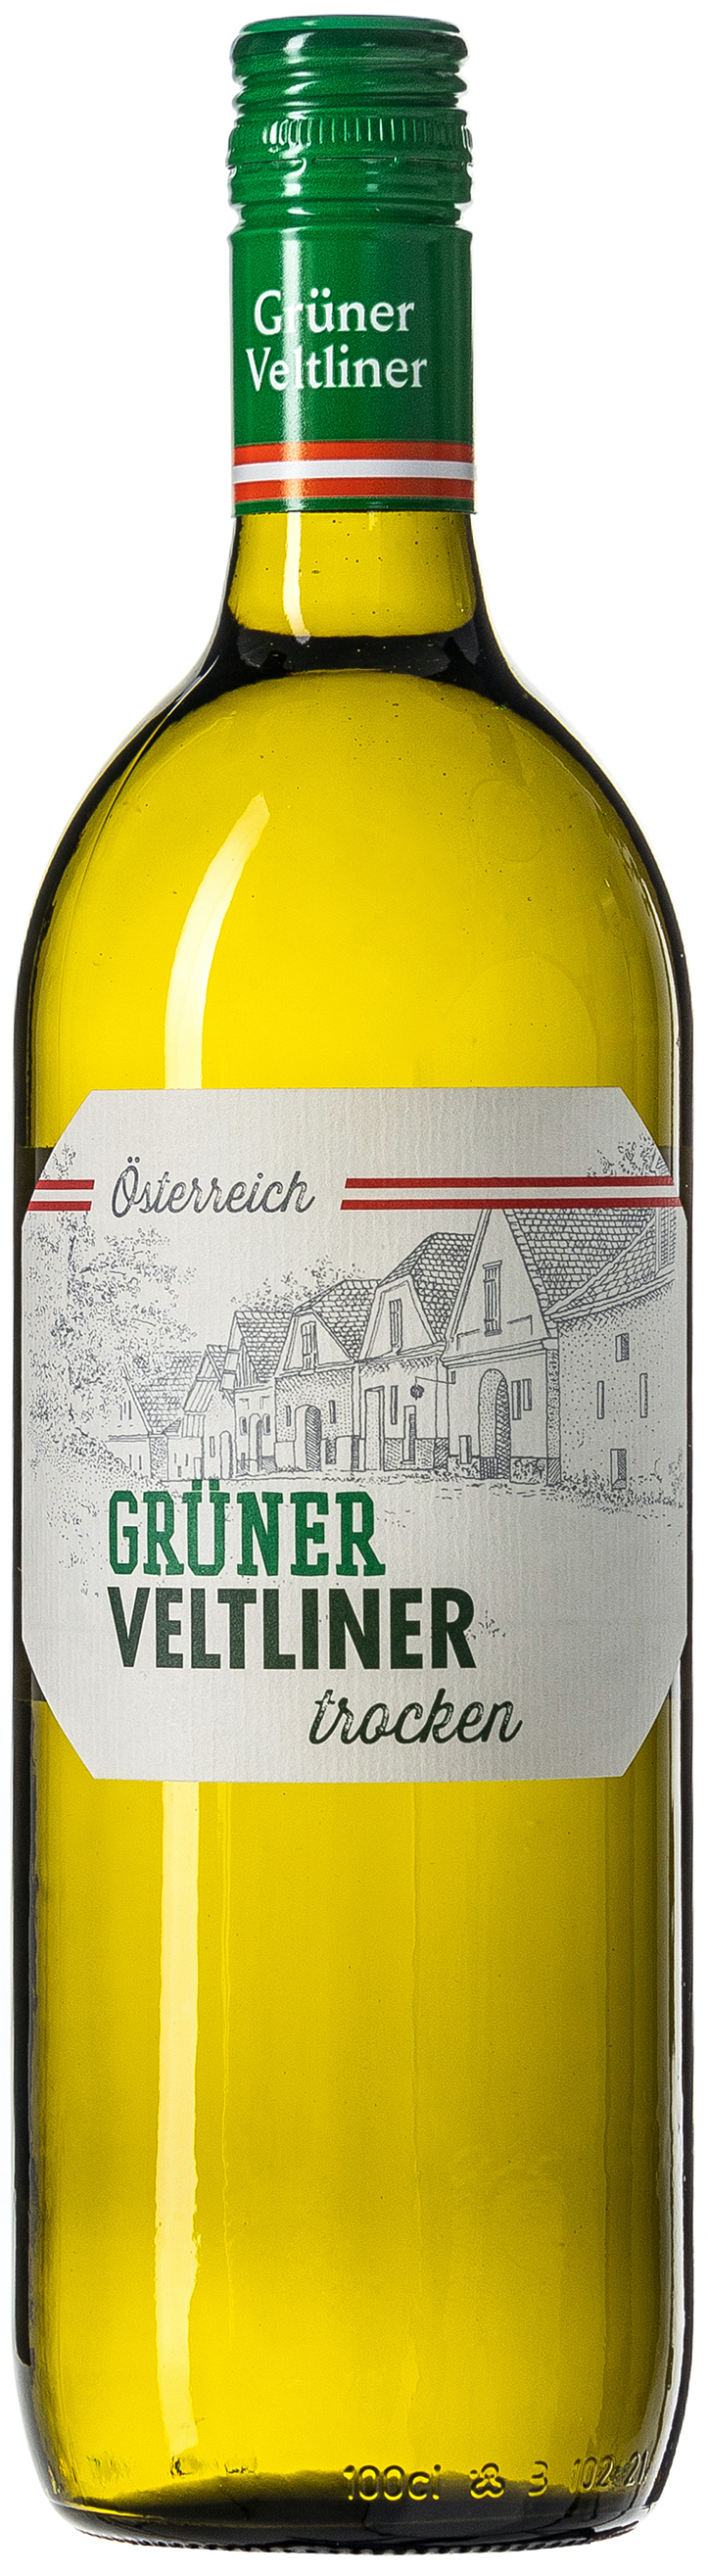 Selection DAC Pfaffl Weinviertel Veltliner Grüner trocken 13% vol. 0,75L